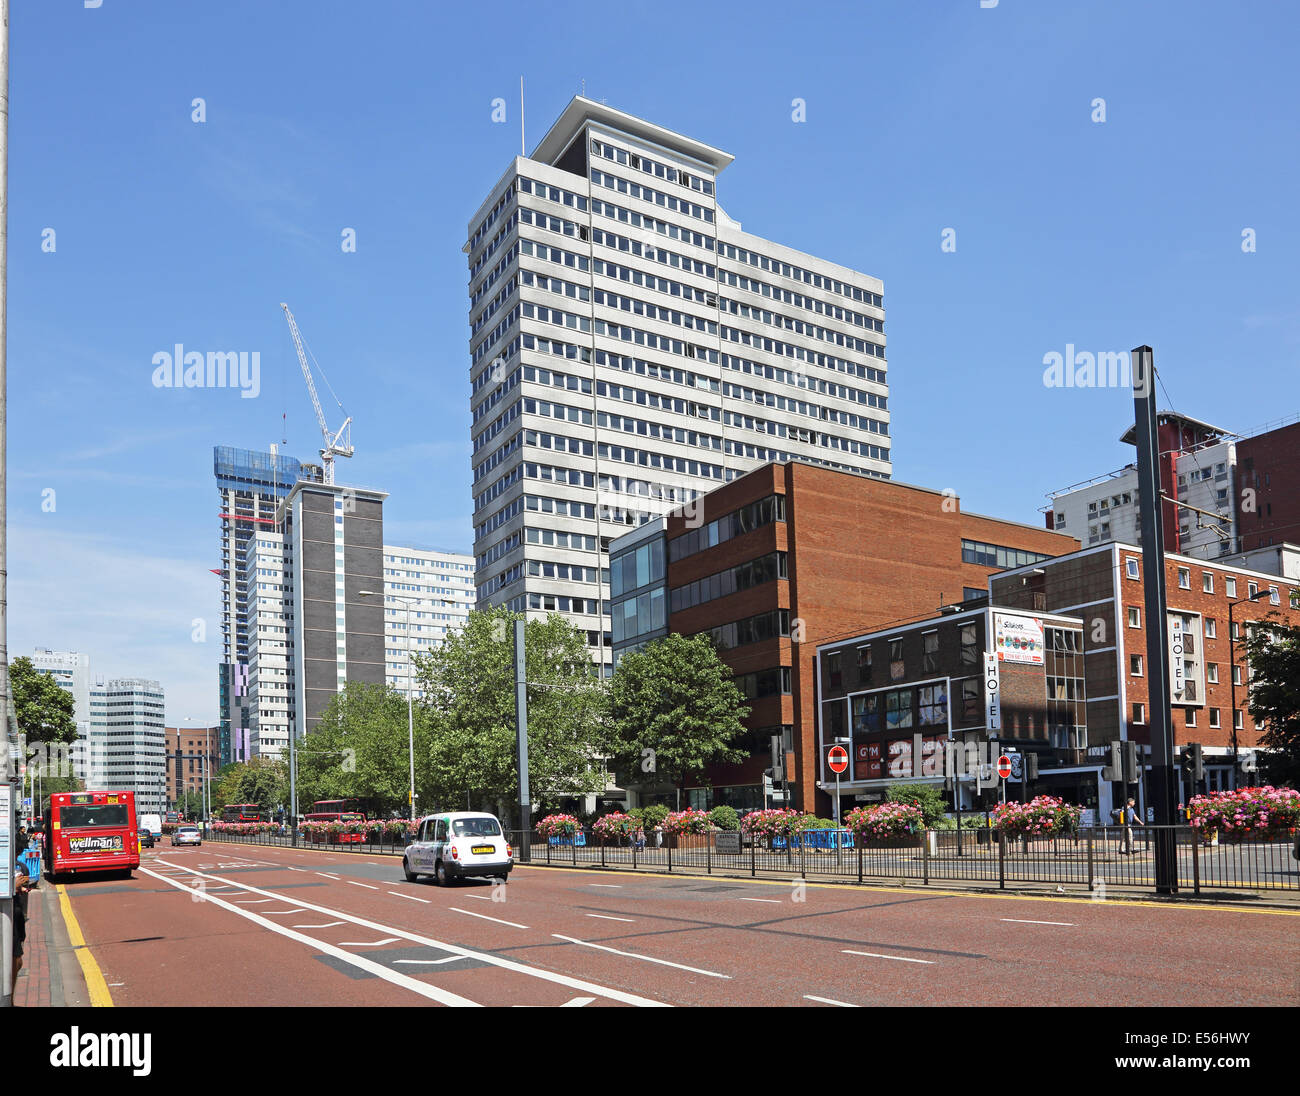 Wellesley Road, Croydon, UK. Eine moderne, urbane zweispurige mit bestehenden und neuen Bürogebäuden. Zeigt eine Bushaltestelle und ein Taxistand. Stockfoto